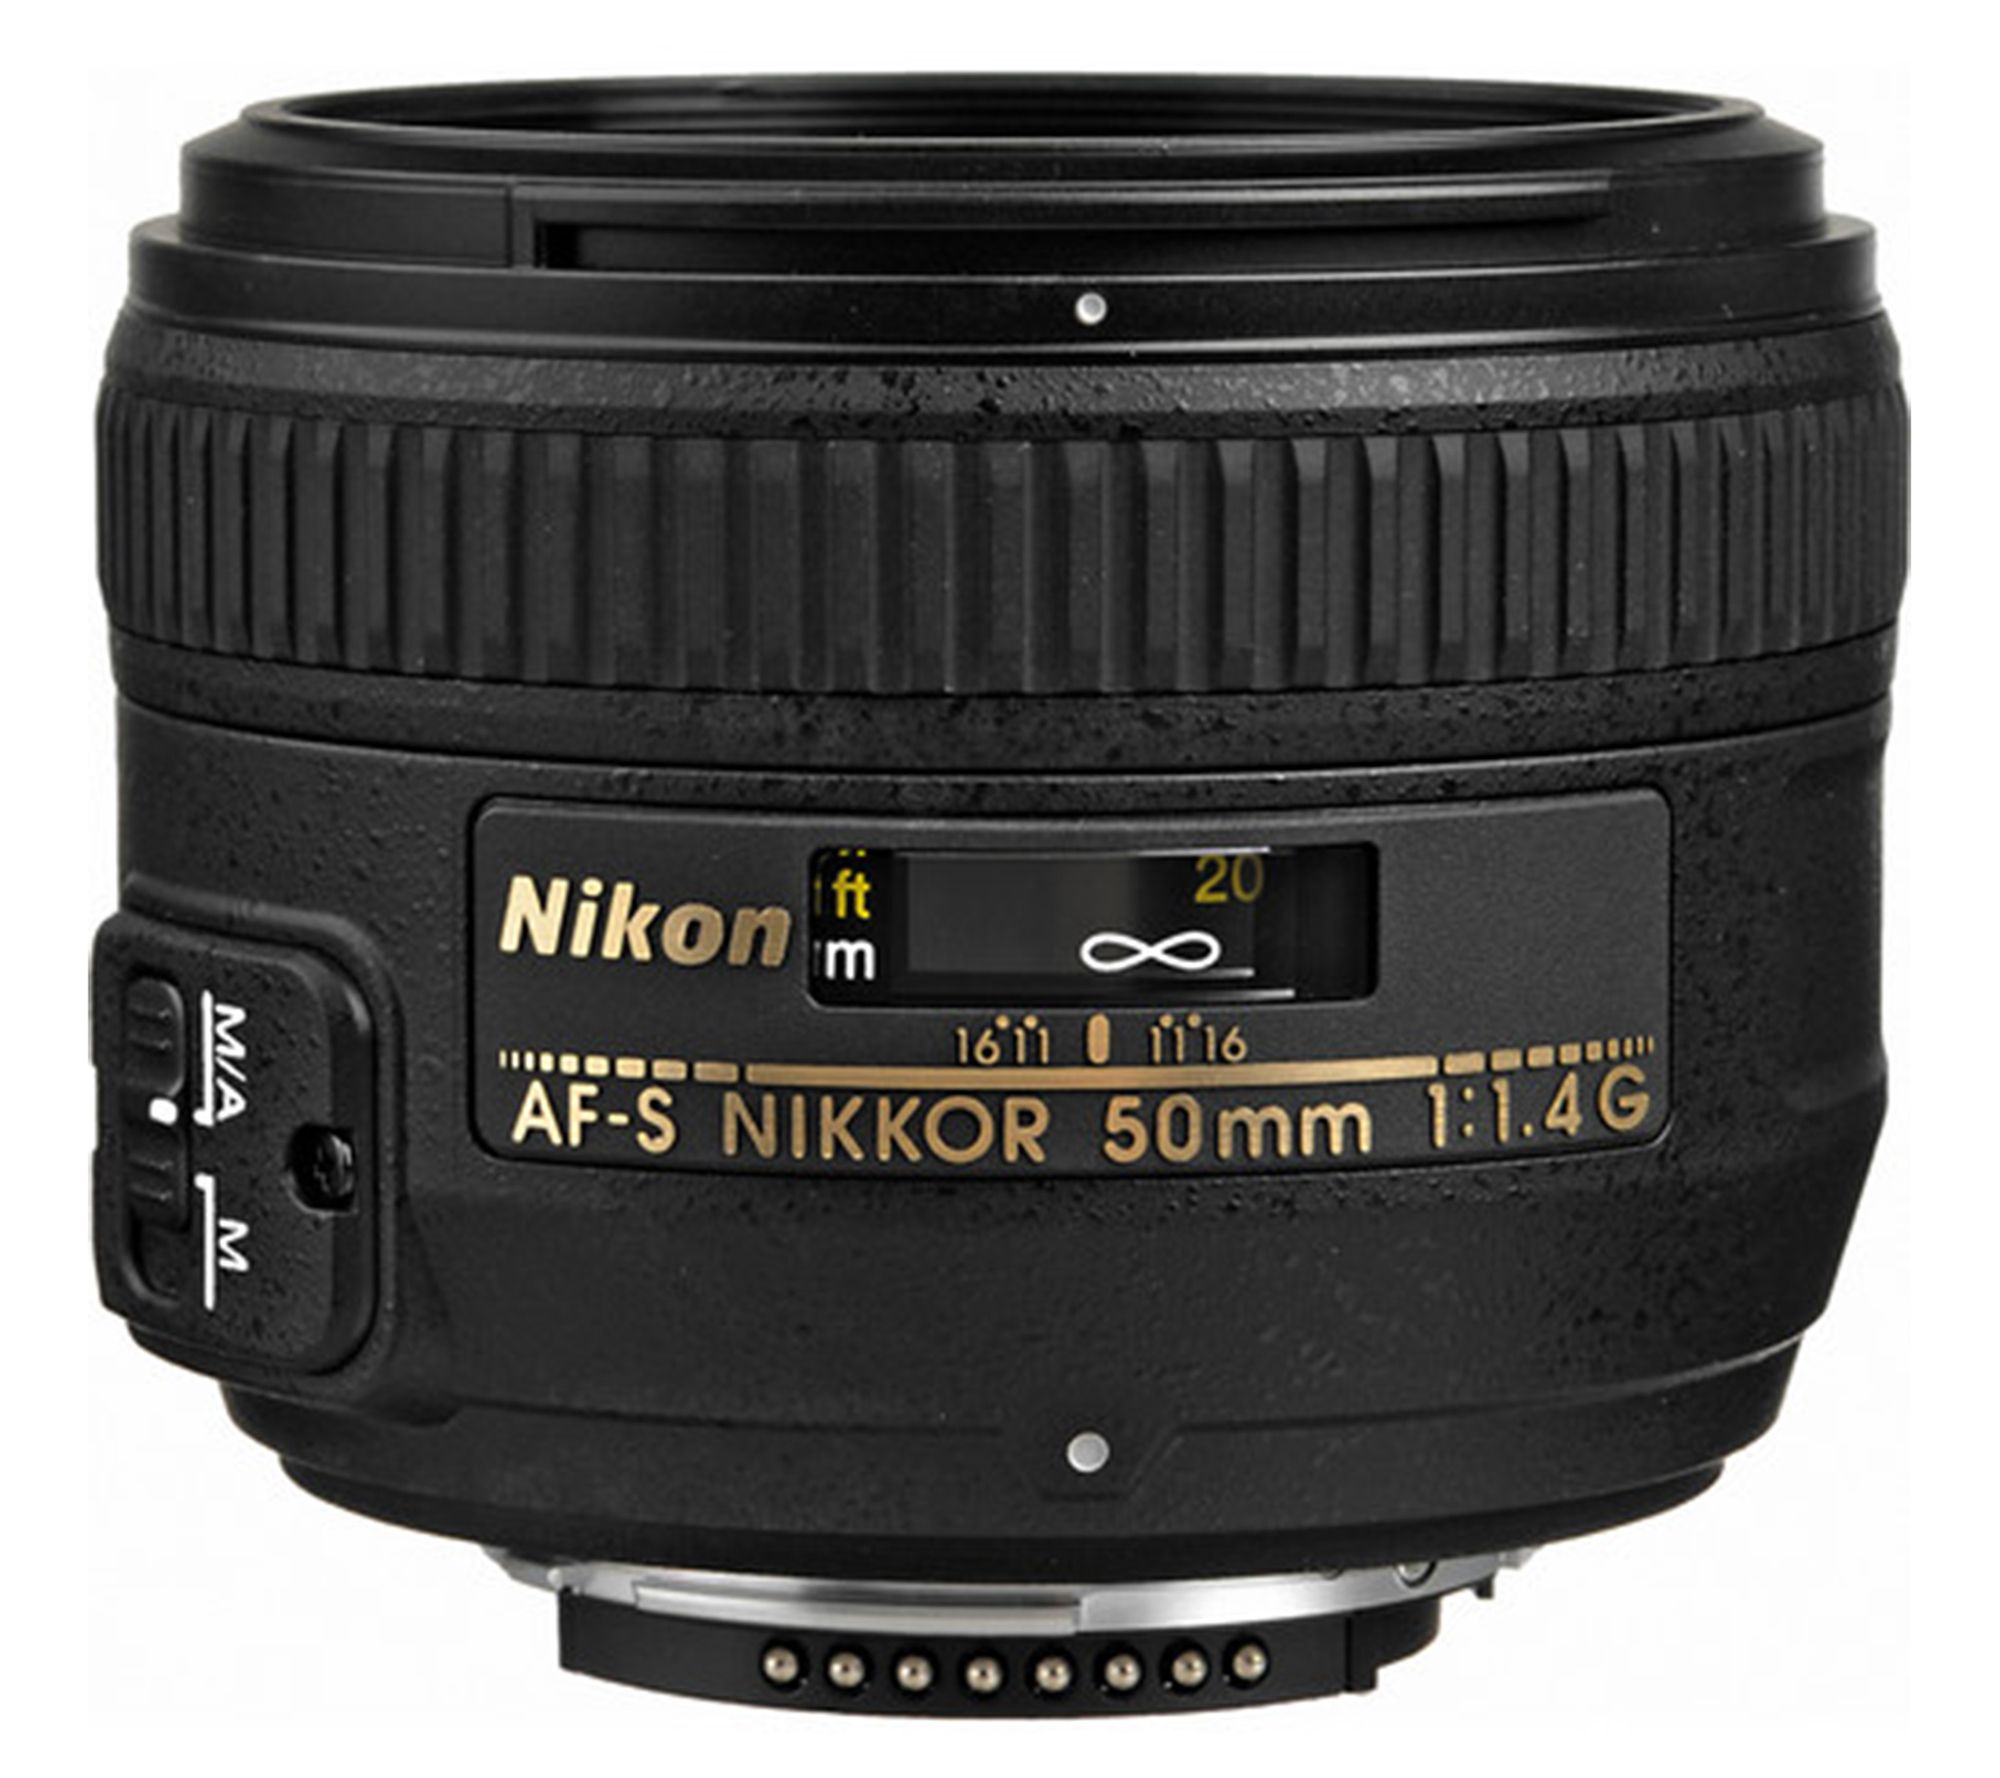 Nikon 単焦点レンズ AF-S NIKKOR 50mm f/1.4G人気の売れ筋レンズで御座います